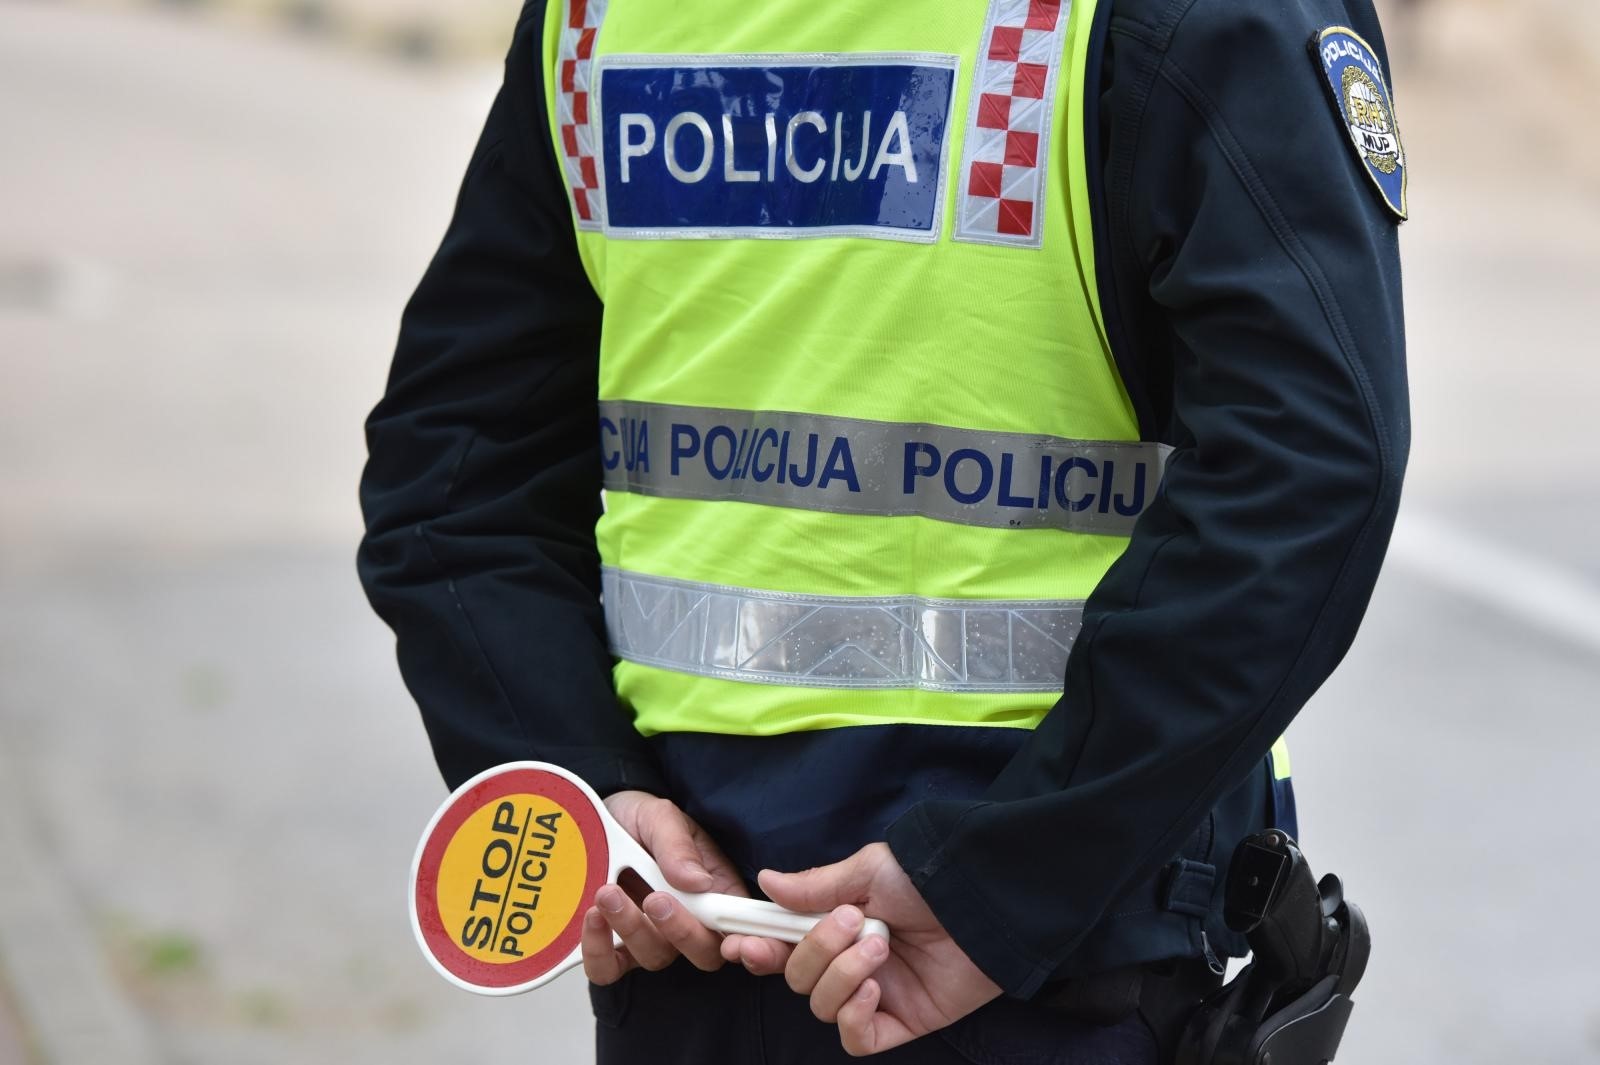 19.04.2018., Sibenik -
Policijska kontrola vozila
Photo: Hrvoje Jelavic/PIXSELL